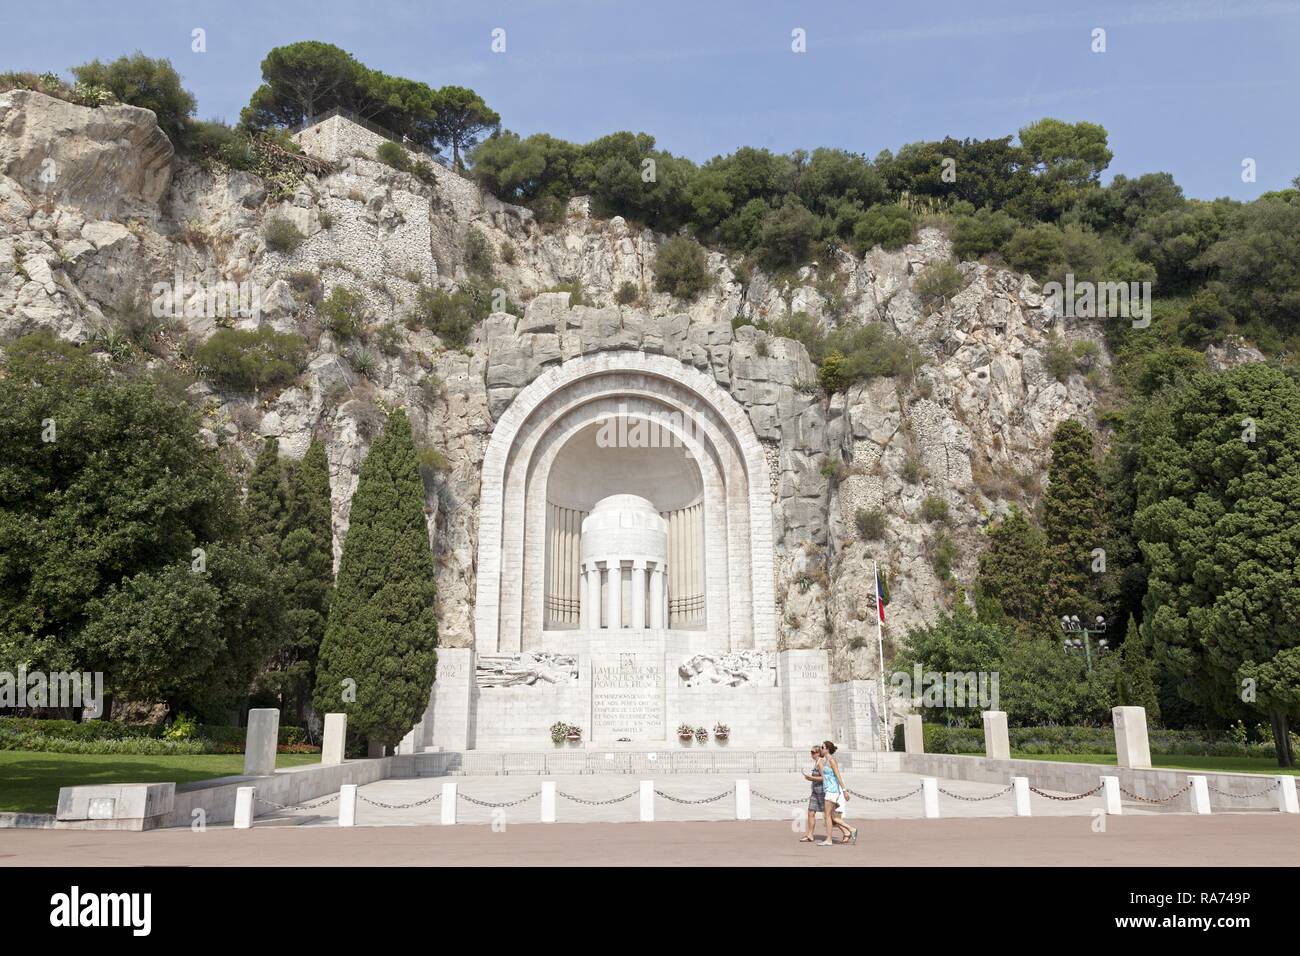 War memorial near the harbour, Nice, Département Alpes-Maritimes, Provence-Alpes-Côte d’Azur, France Stock Photo